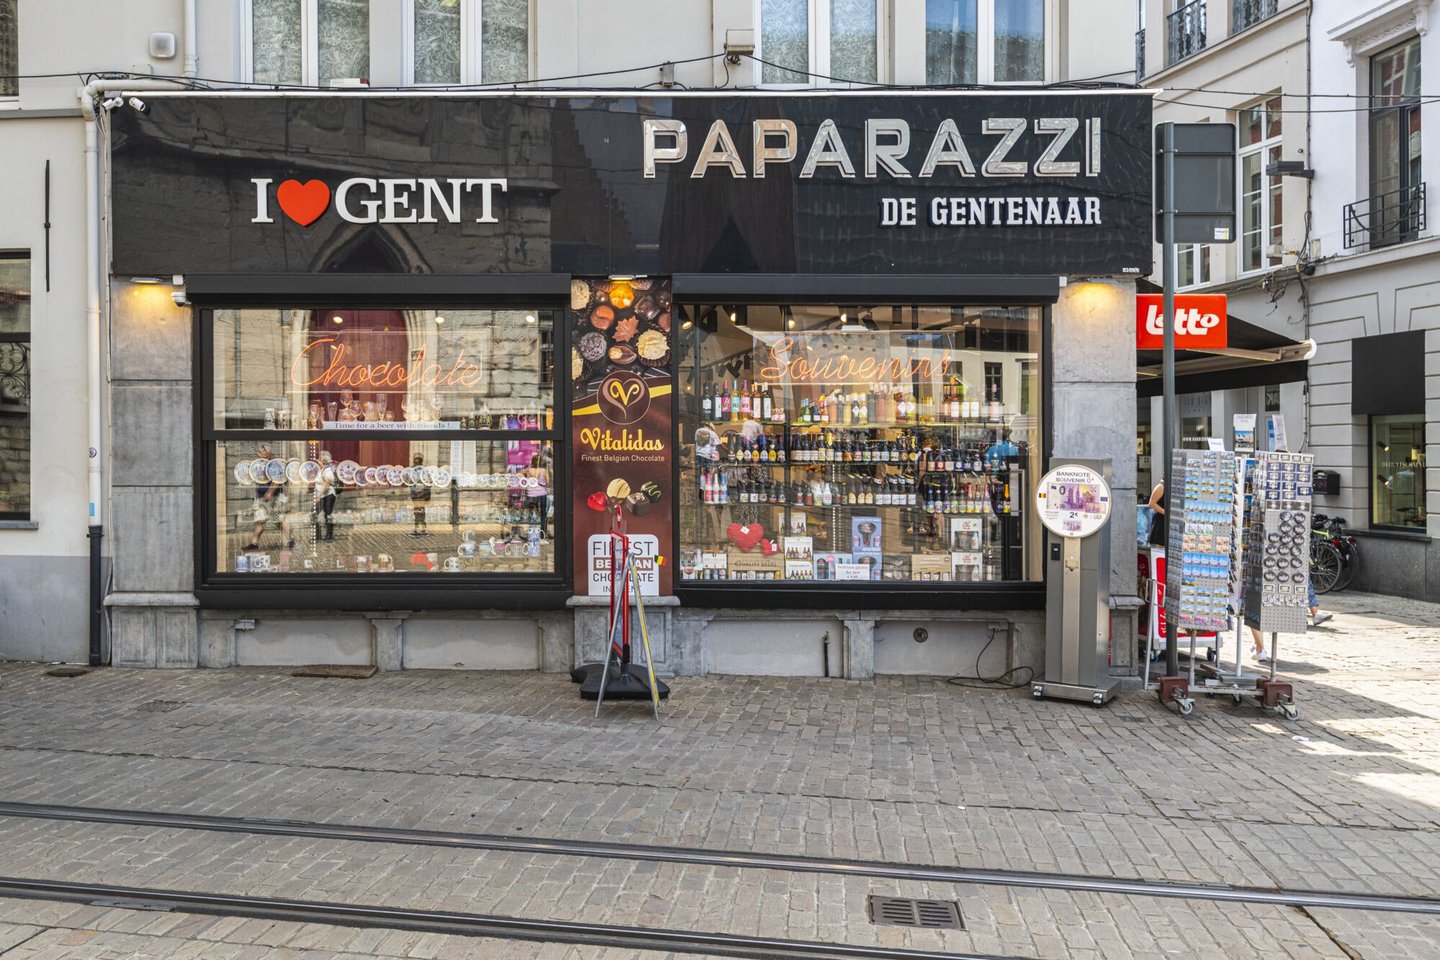 Etalage van Paparazzi, een winkel van souvenirs en voedingswaren in Gent